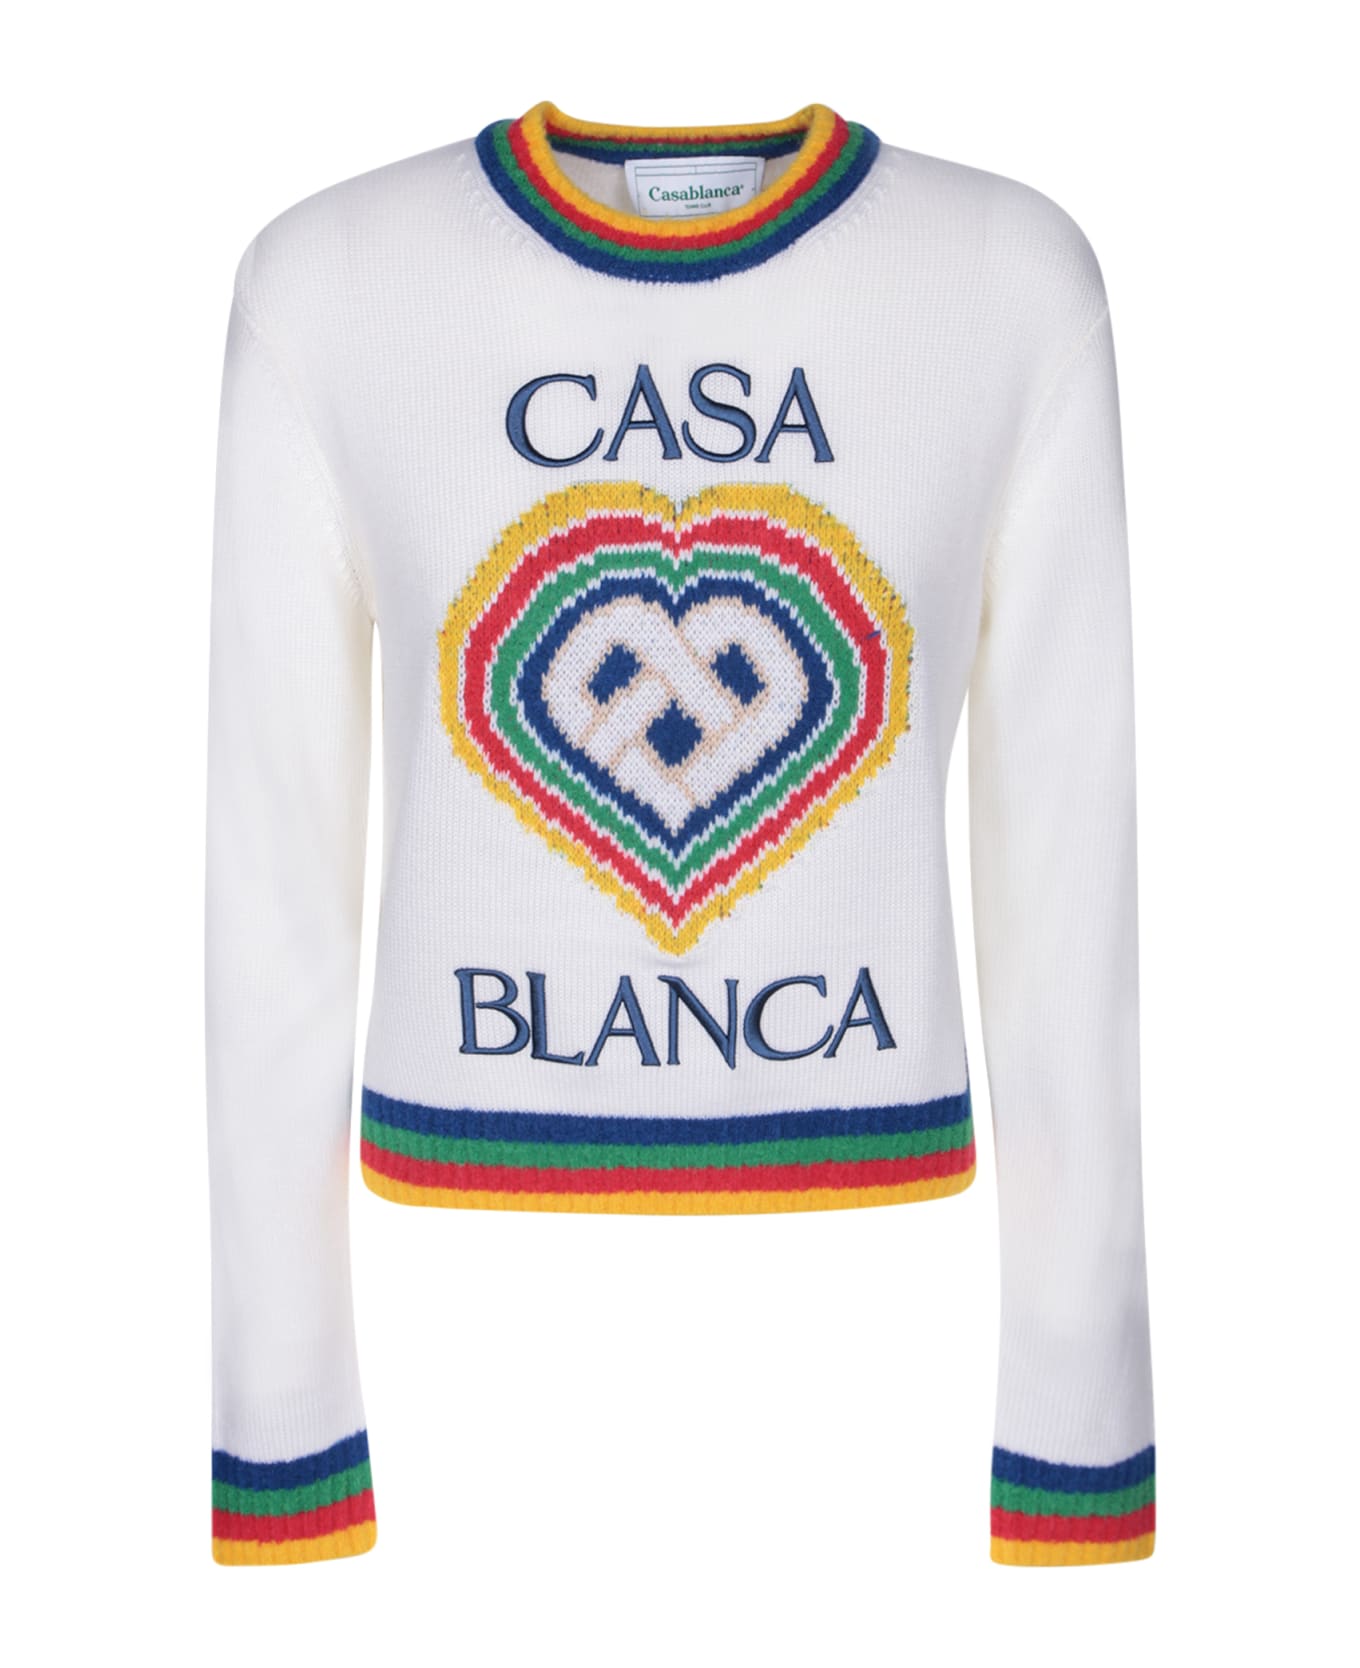 Casablanca Heart Brand Jersey - WHITE